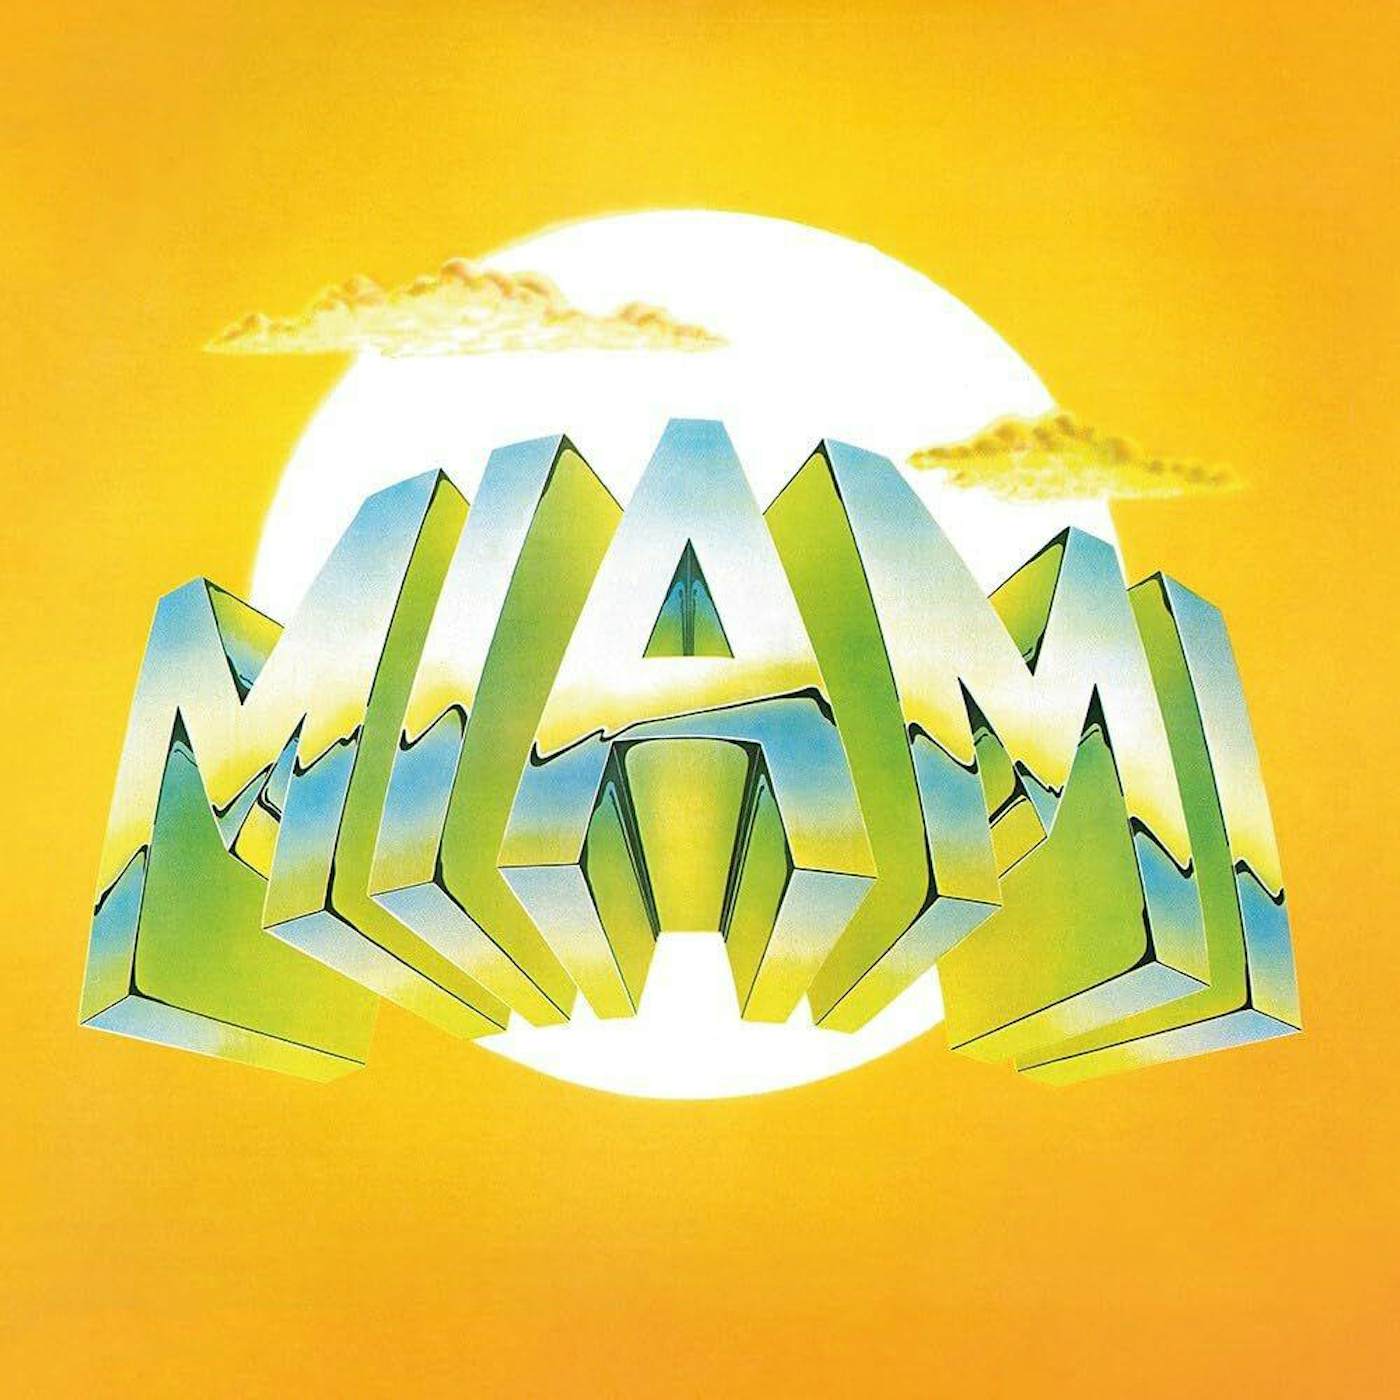  Miami S/T (Blue Vinyl Record)